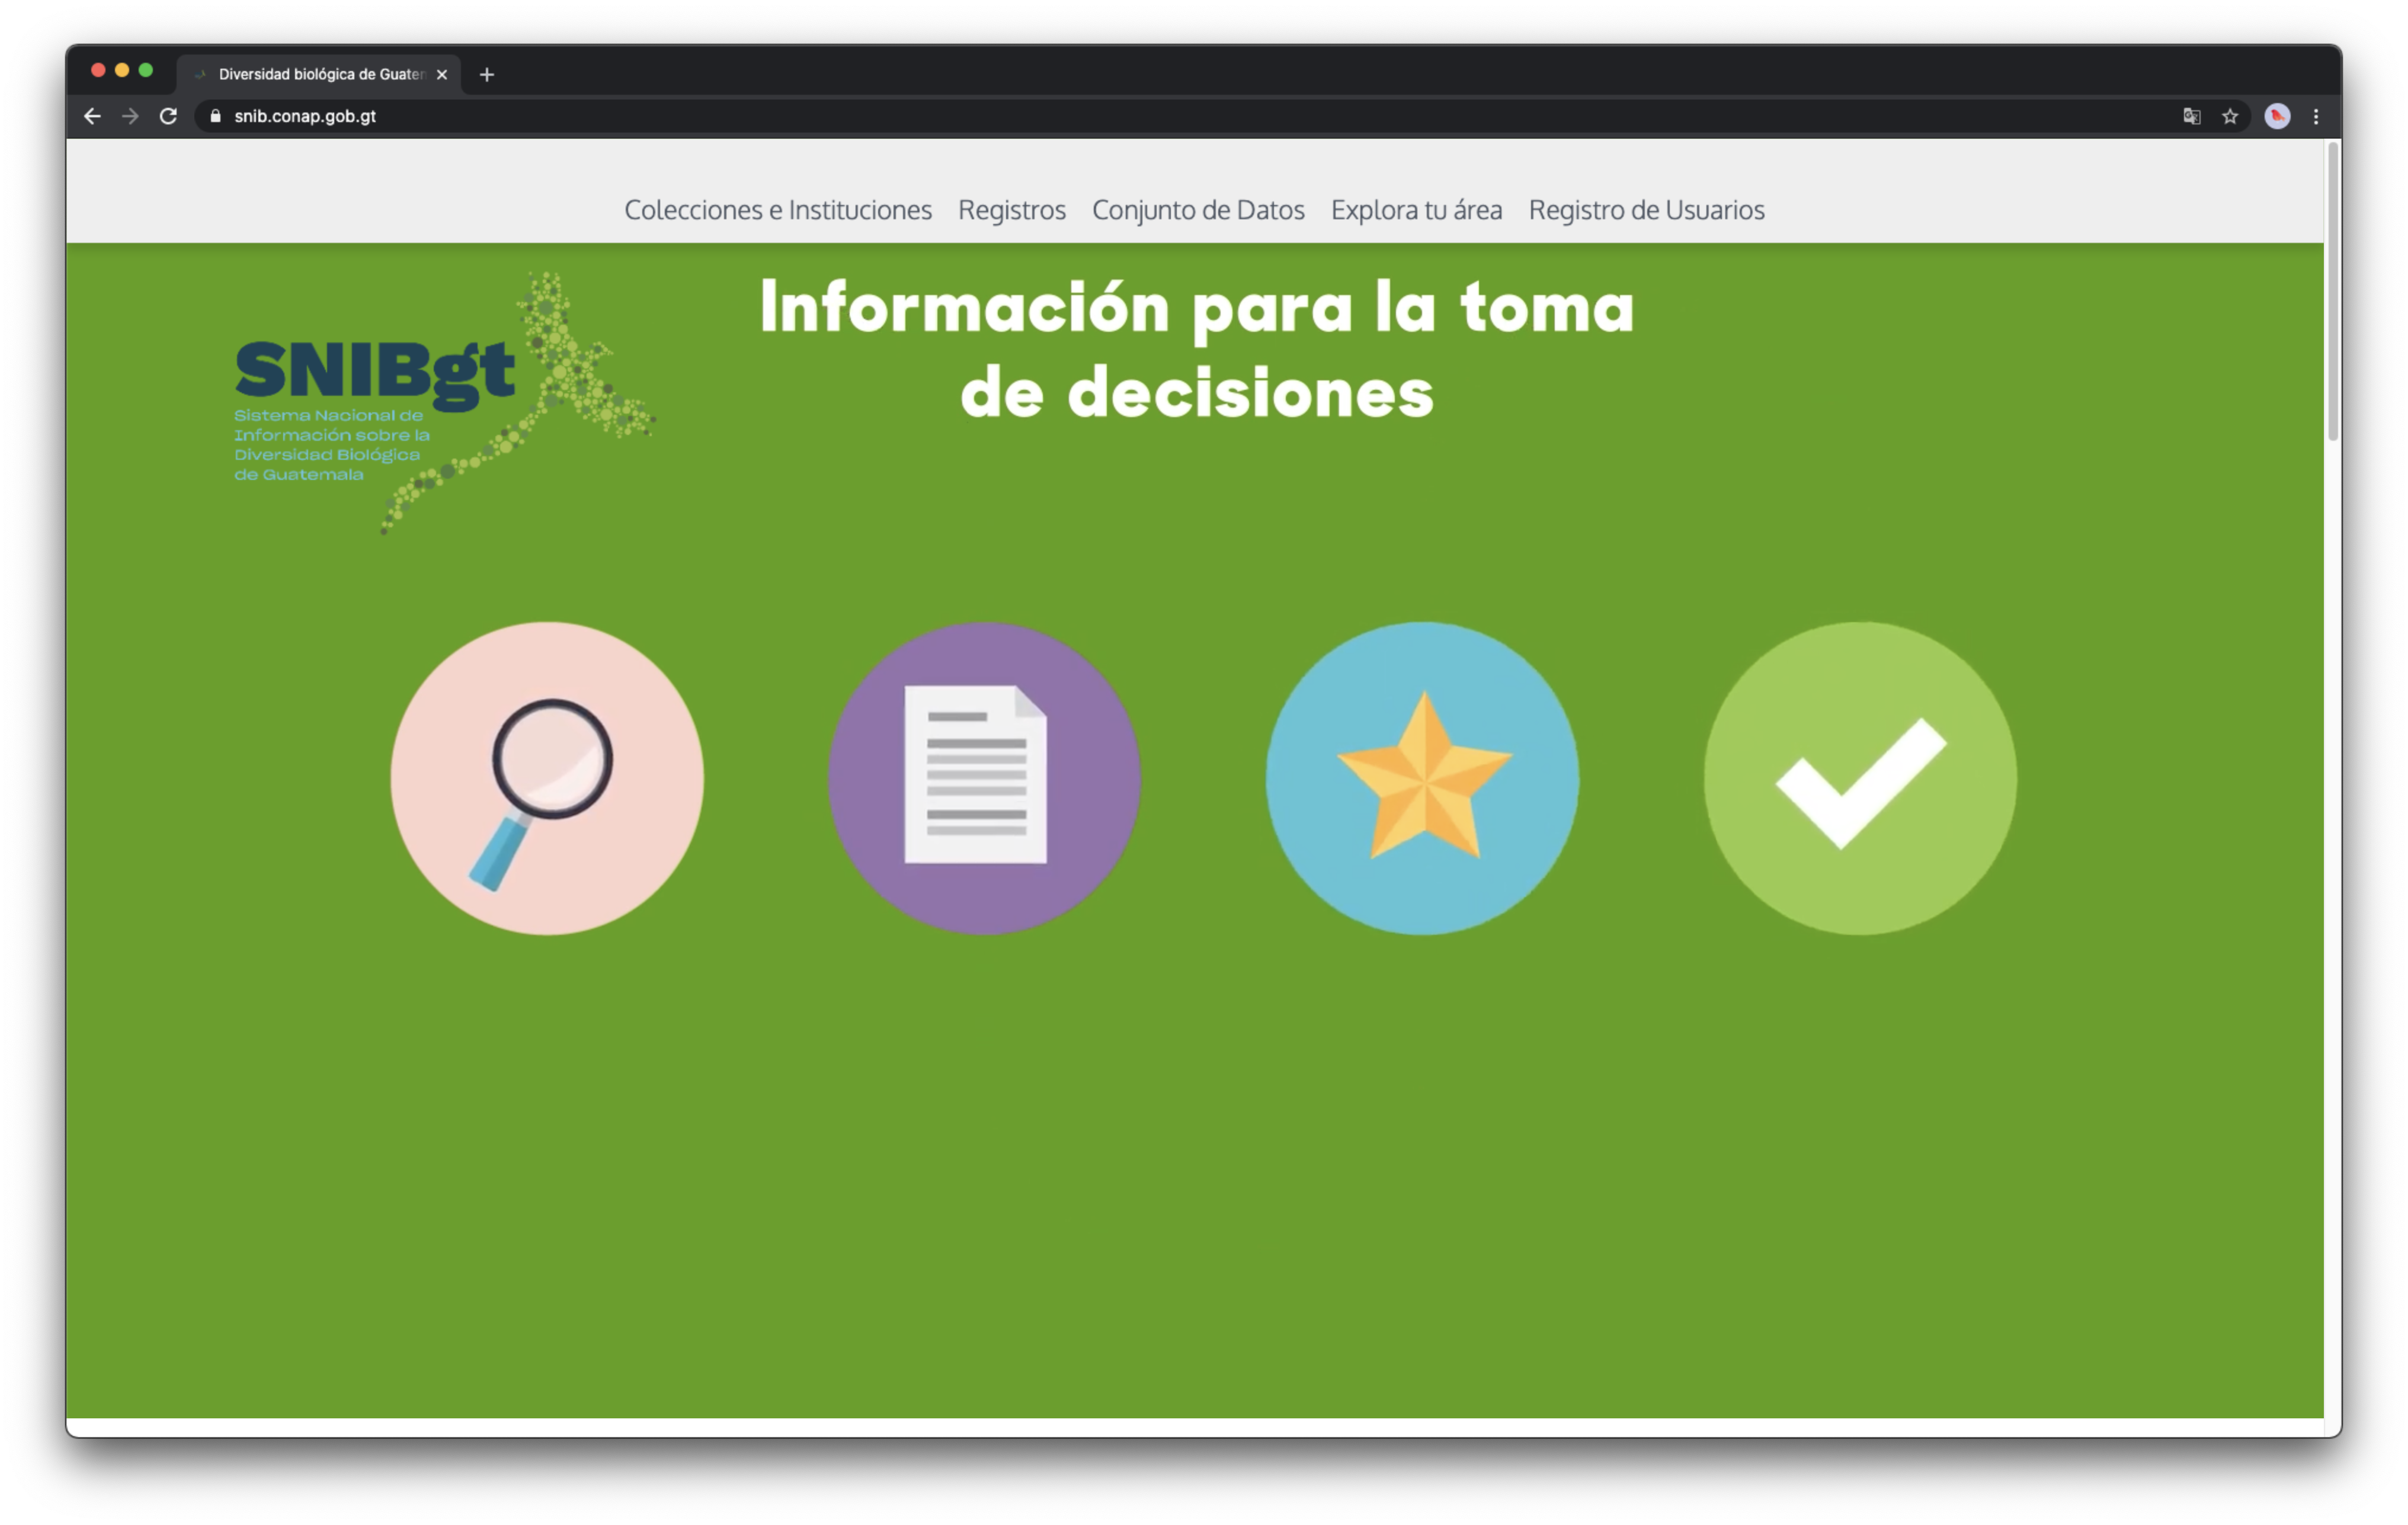 SNIBgt - Sistema Nacional de Información sobre Diversidad Biológica de Guatemala